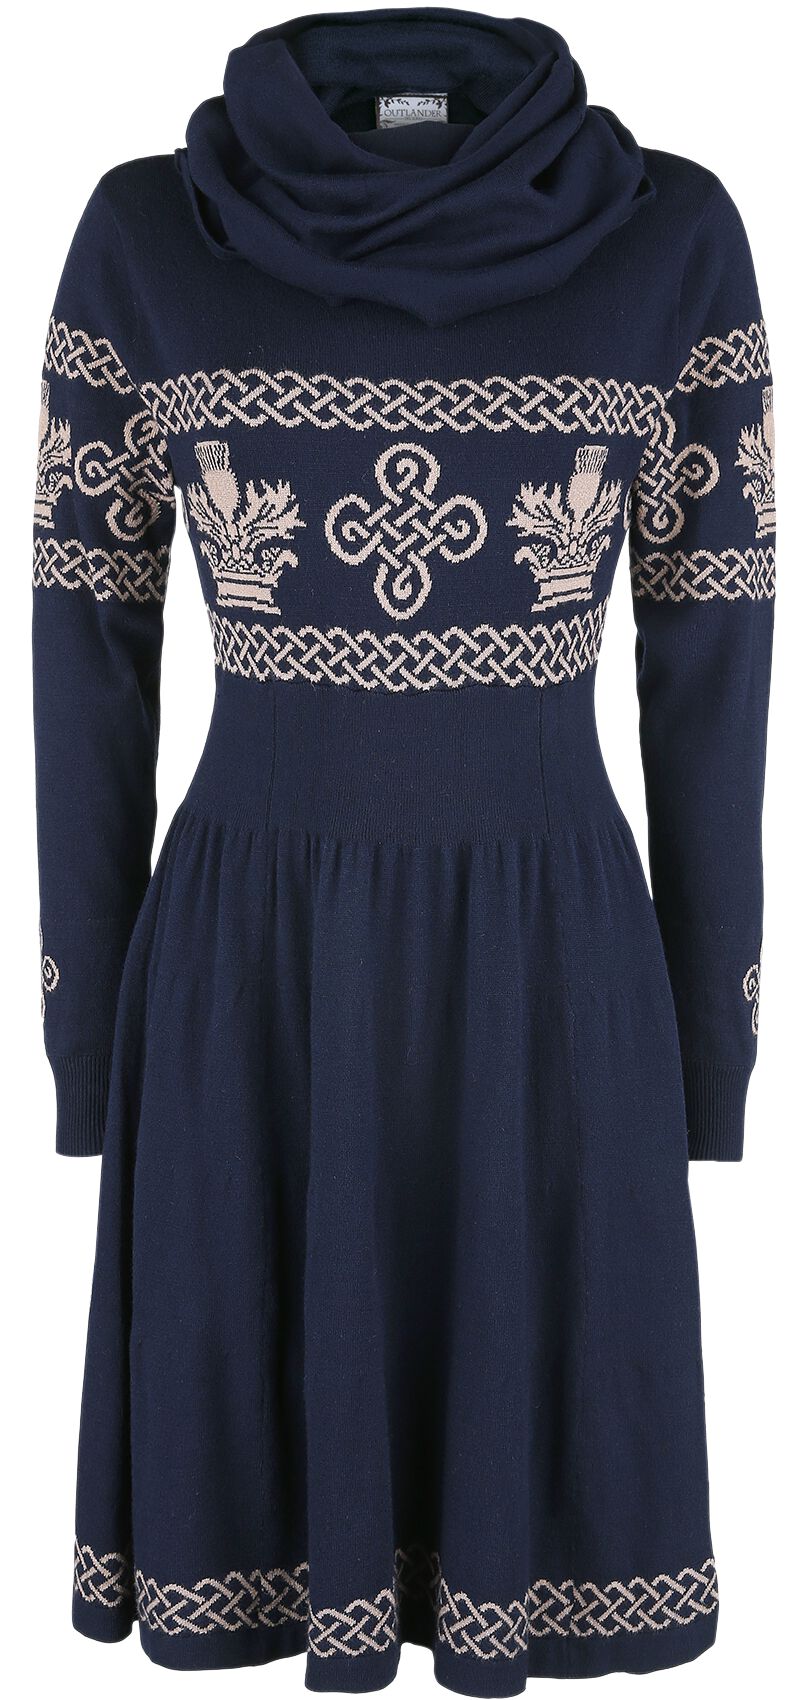 Outlander Kleid knielang - XS bis 3XL - für Damen - Größe M - blau/grau  - EMP exklusives Merchandise! von Outlander